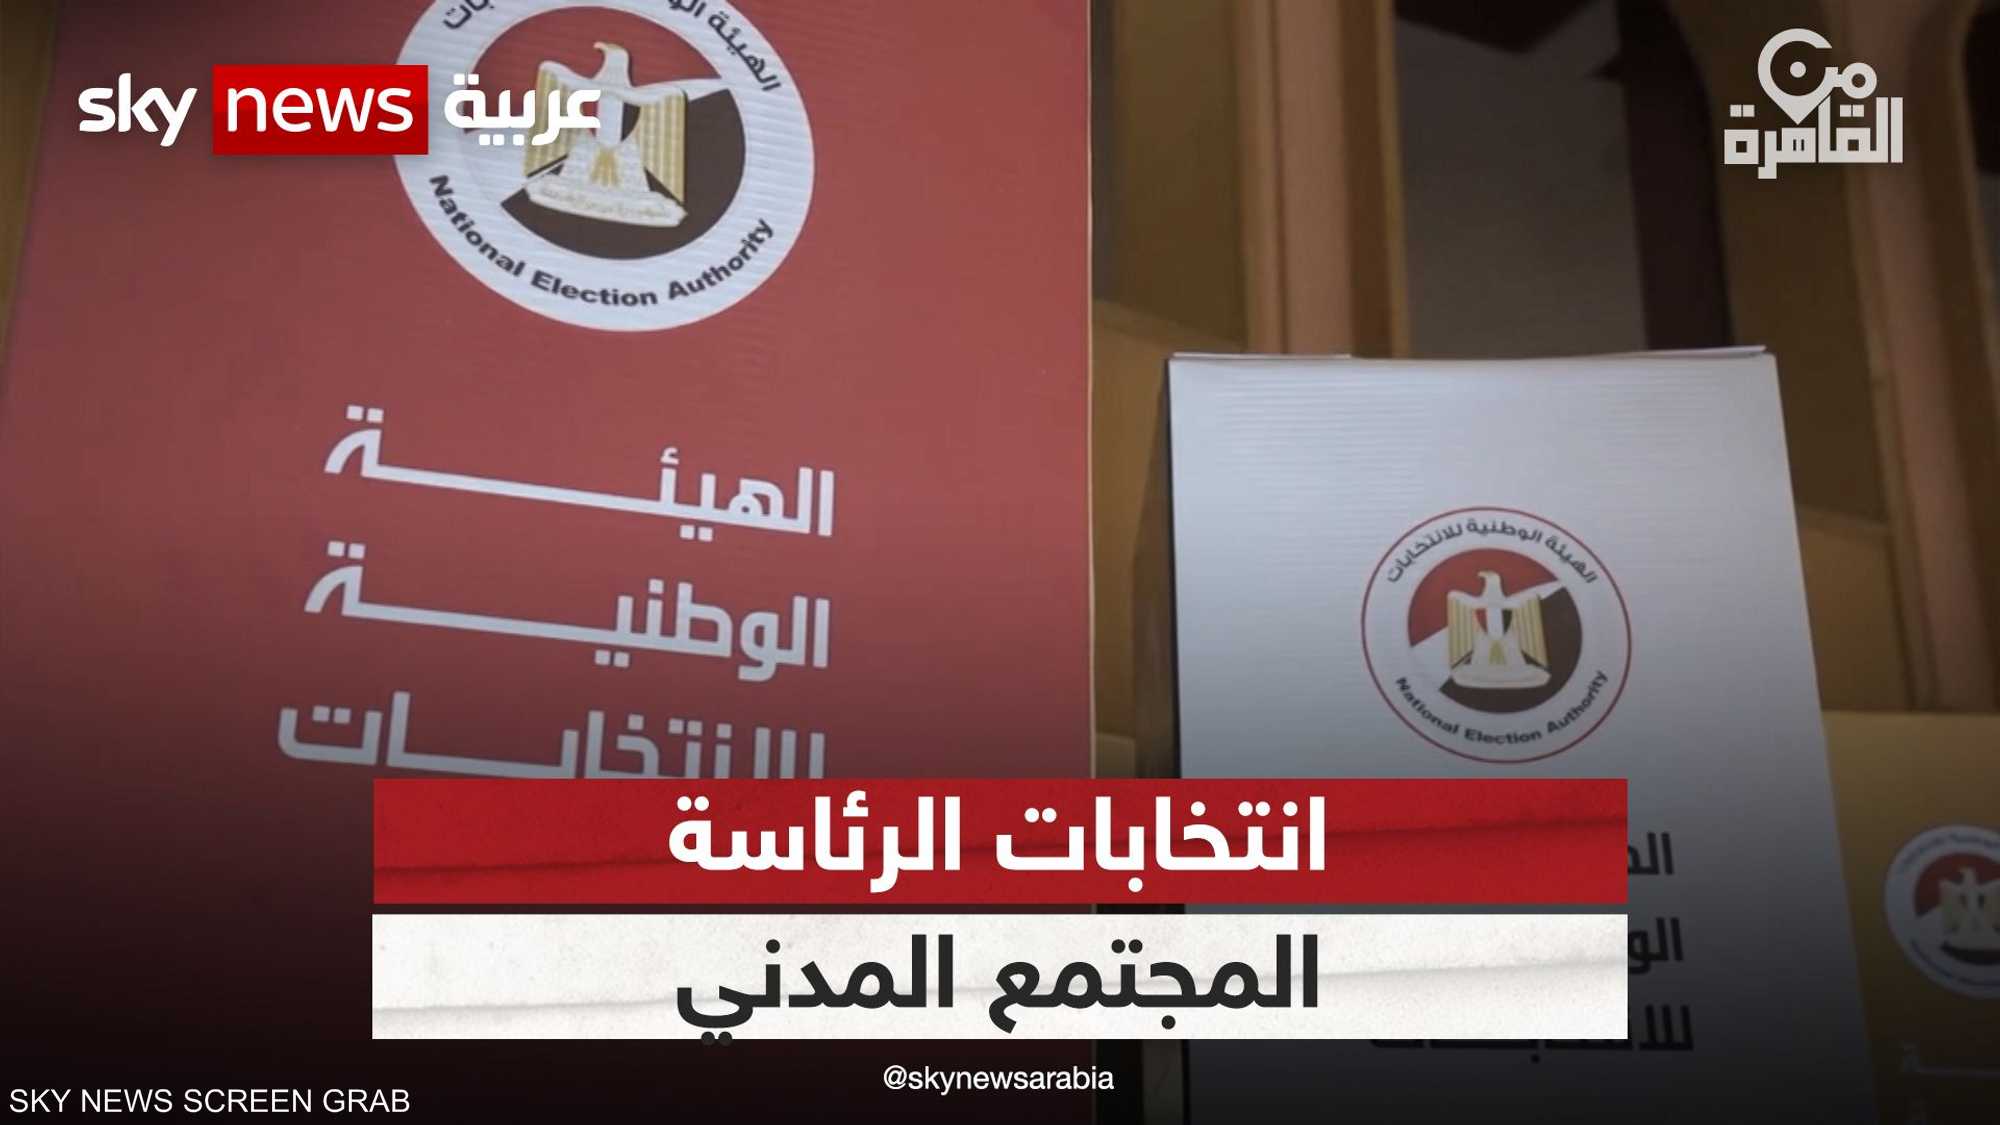 ما دور منظمات المجتمع المدني في انتخابات الرئاسة المصرية؟